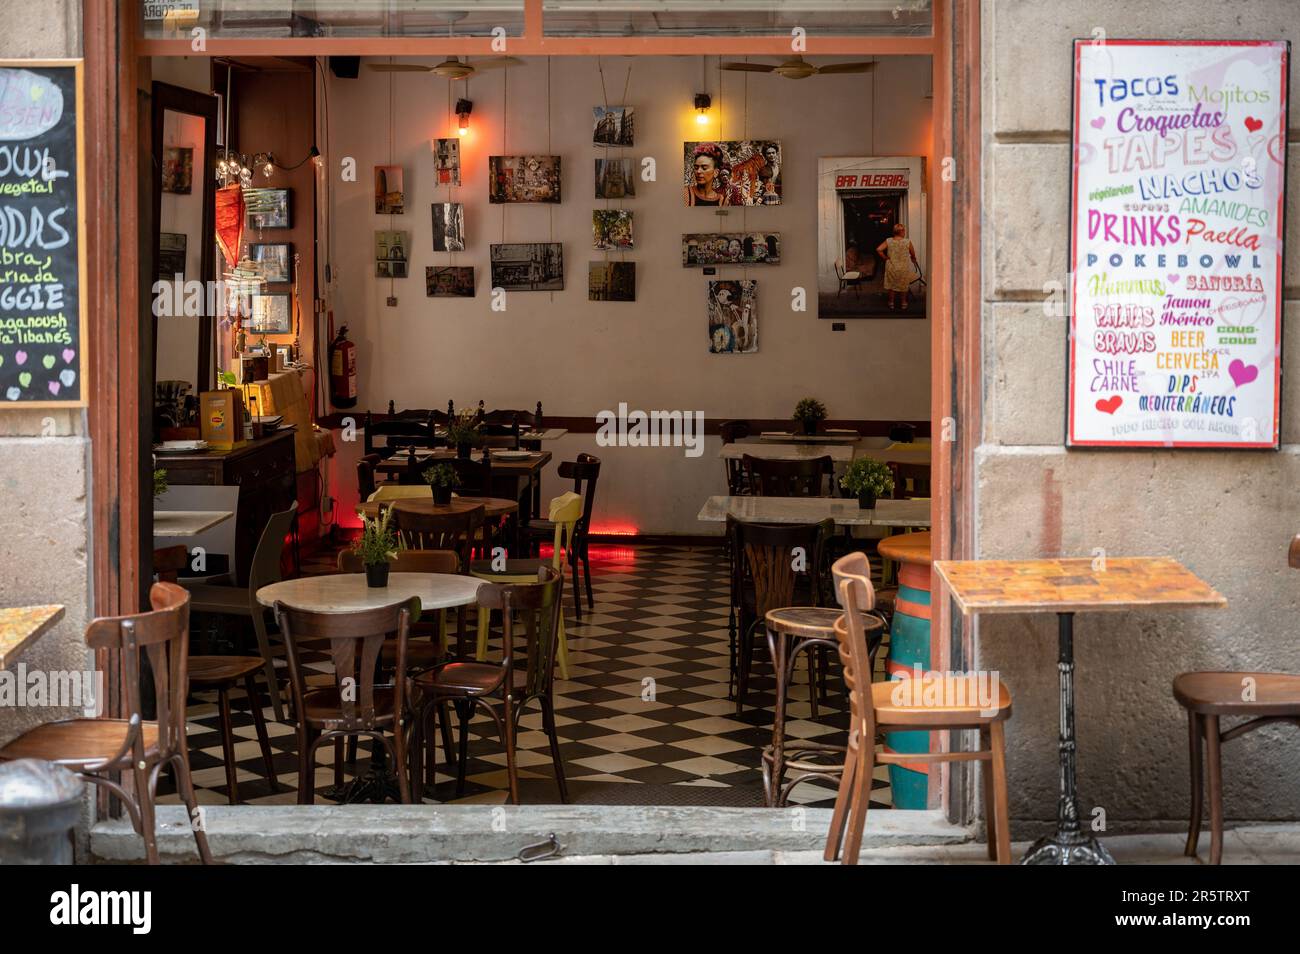 Un joli petit bar dans un coin du quartier gothique de Barcelone, Espagne Banque D'Images